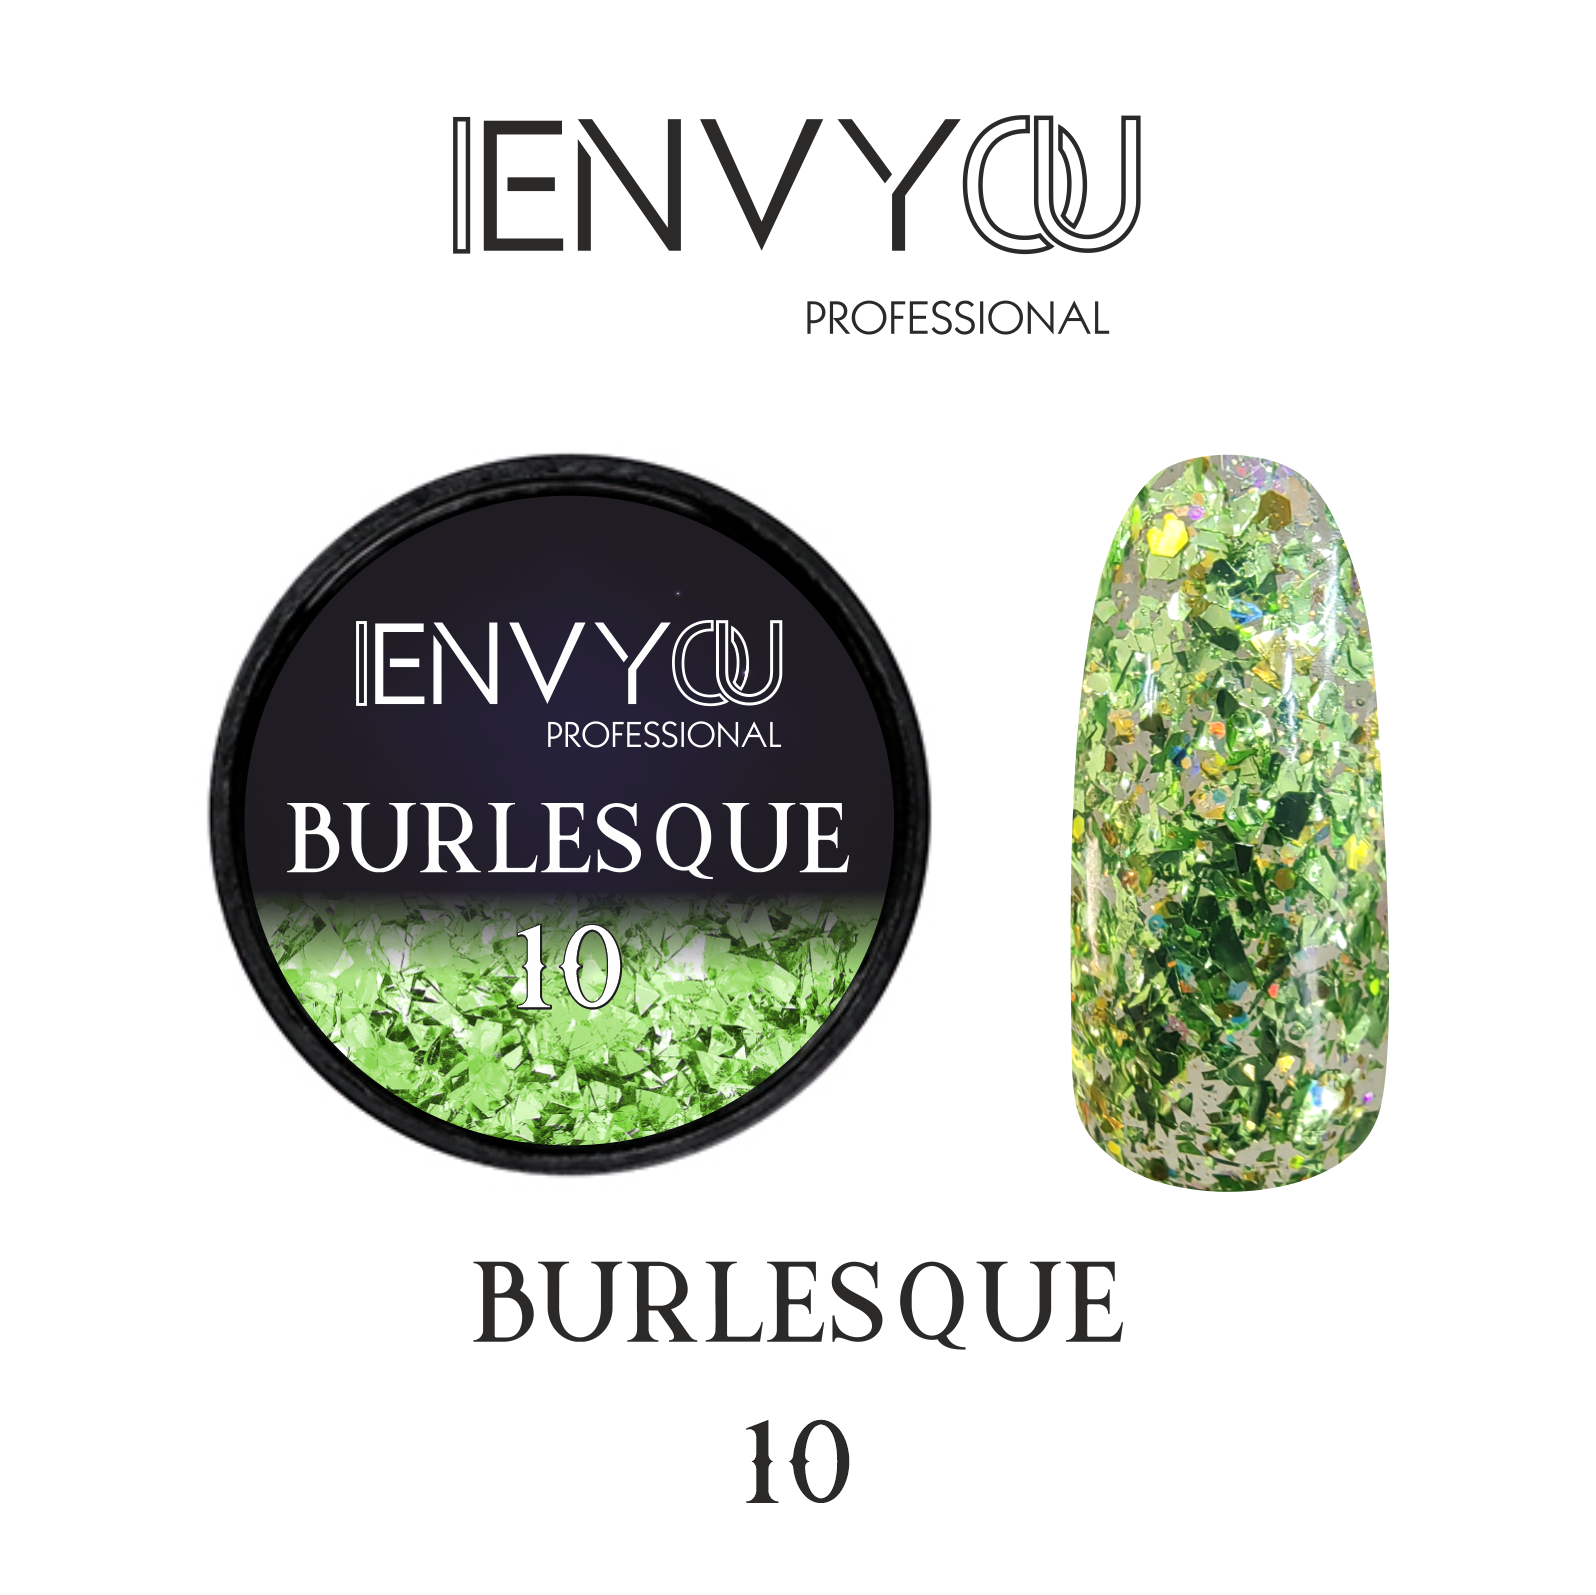 ENVY Burlesque 10 6g